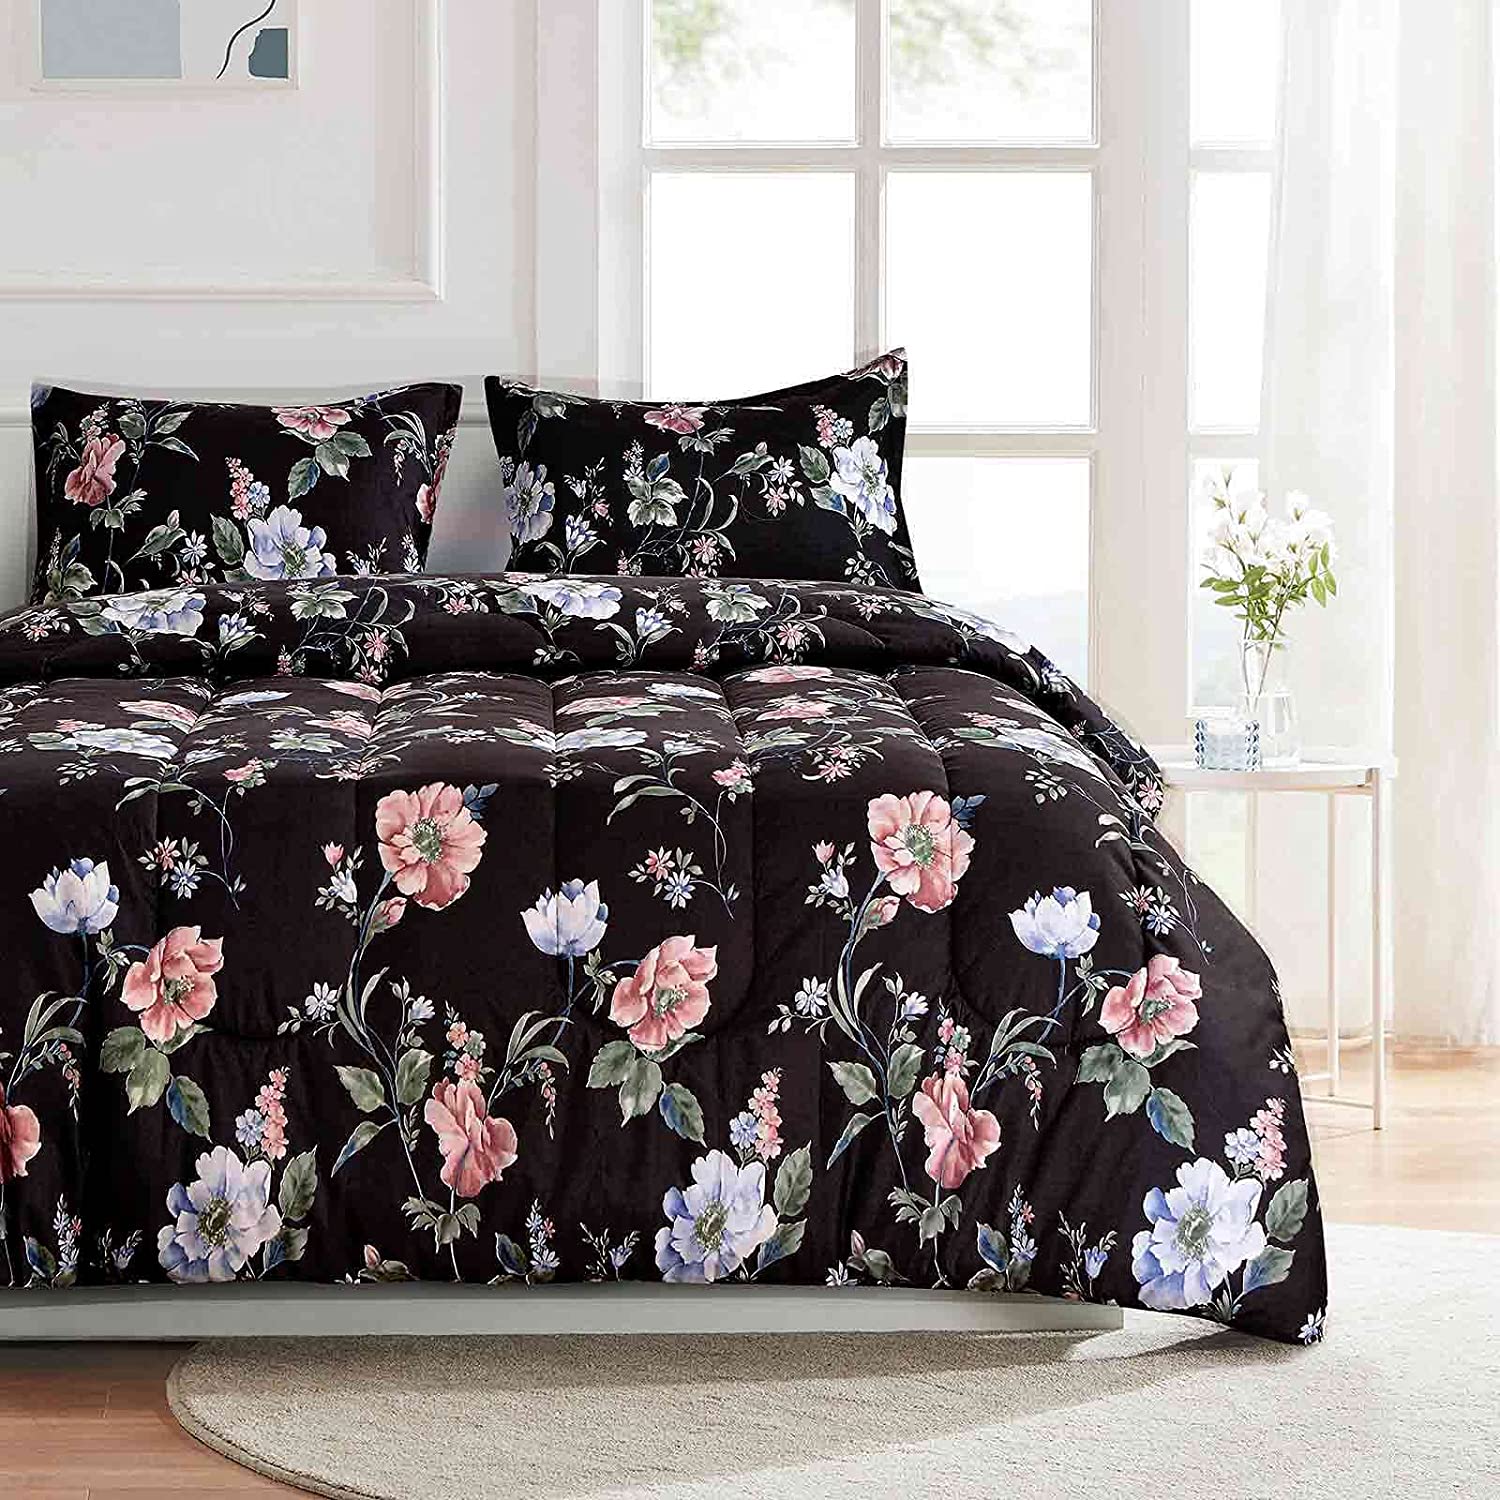 Reutter Porzellan COPRILETTO/Flower queen bed Comforter set Bambole Tube 1:12 